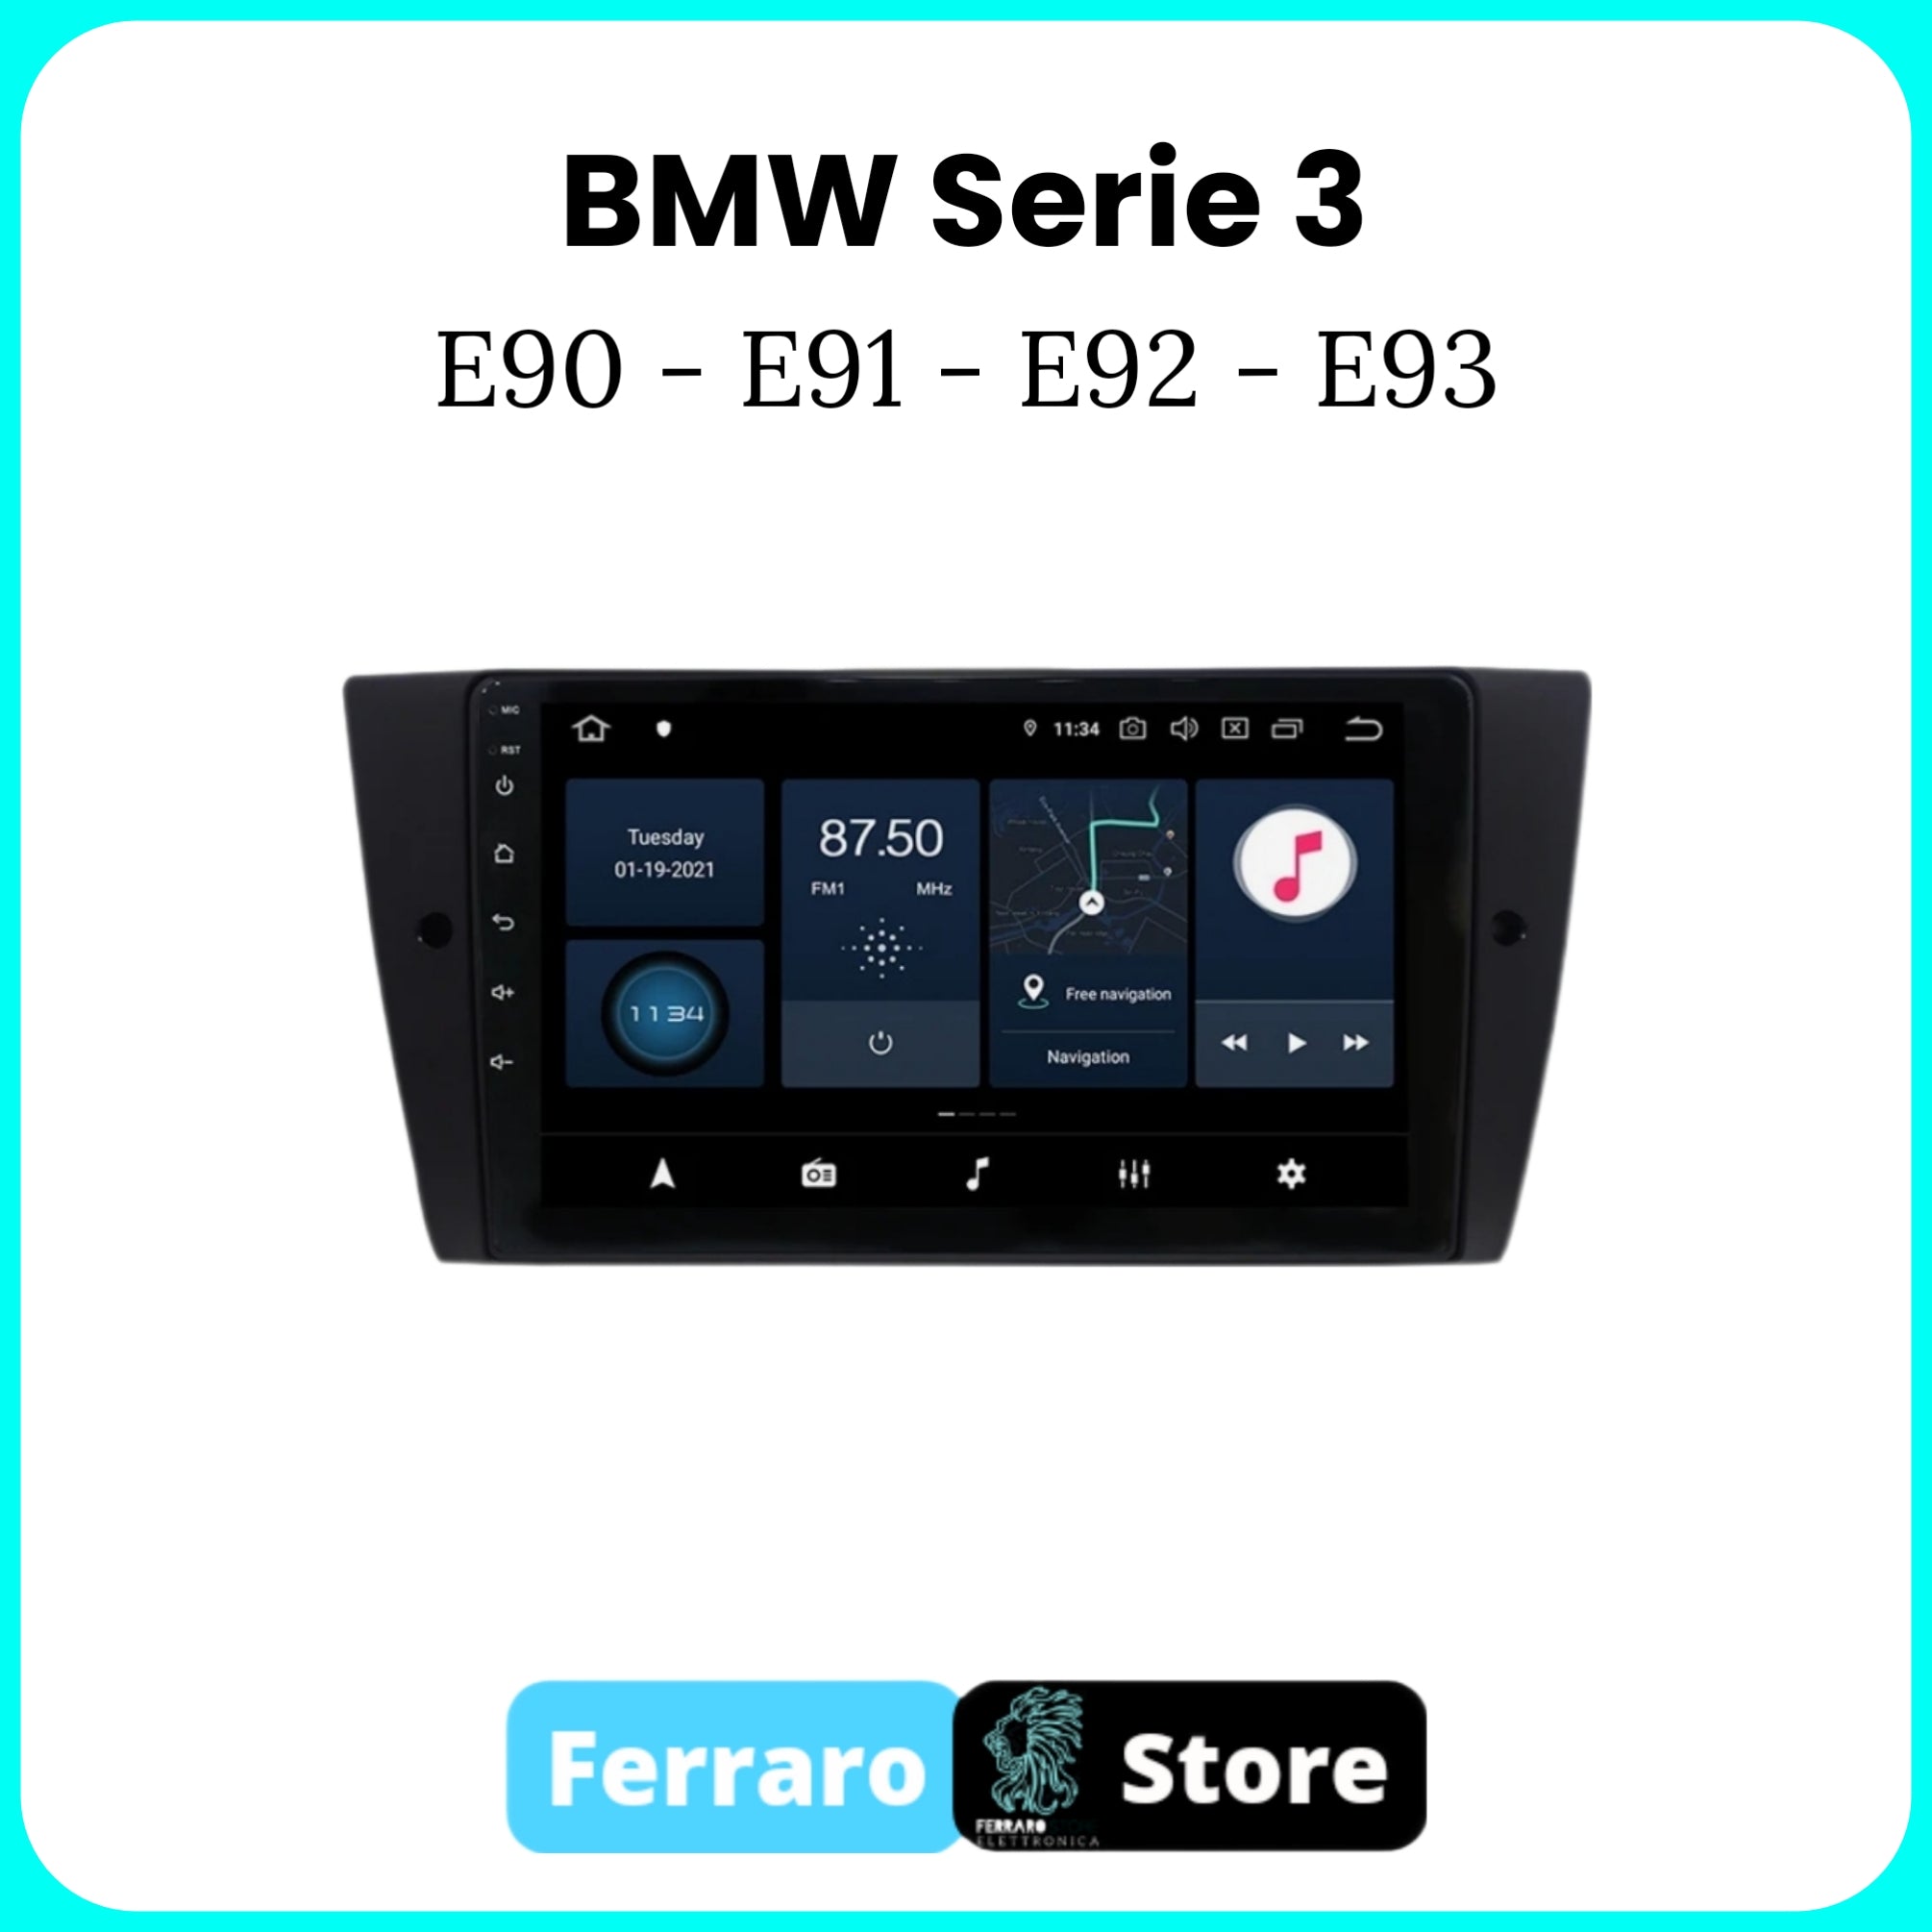 Autoradio per BMW SERIE 3 E90-E91-E92-E93 [Dal 2005 in Poi] - 2GB/4GB Sistema auto Intelligente, 2Din 9"Pollici, GPS, Navigatore, Wifi